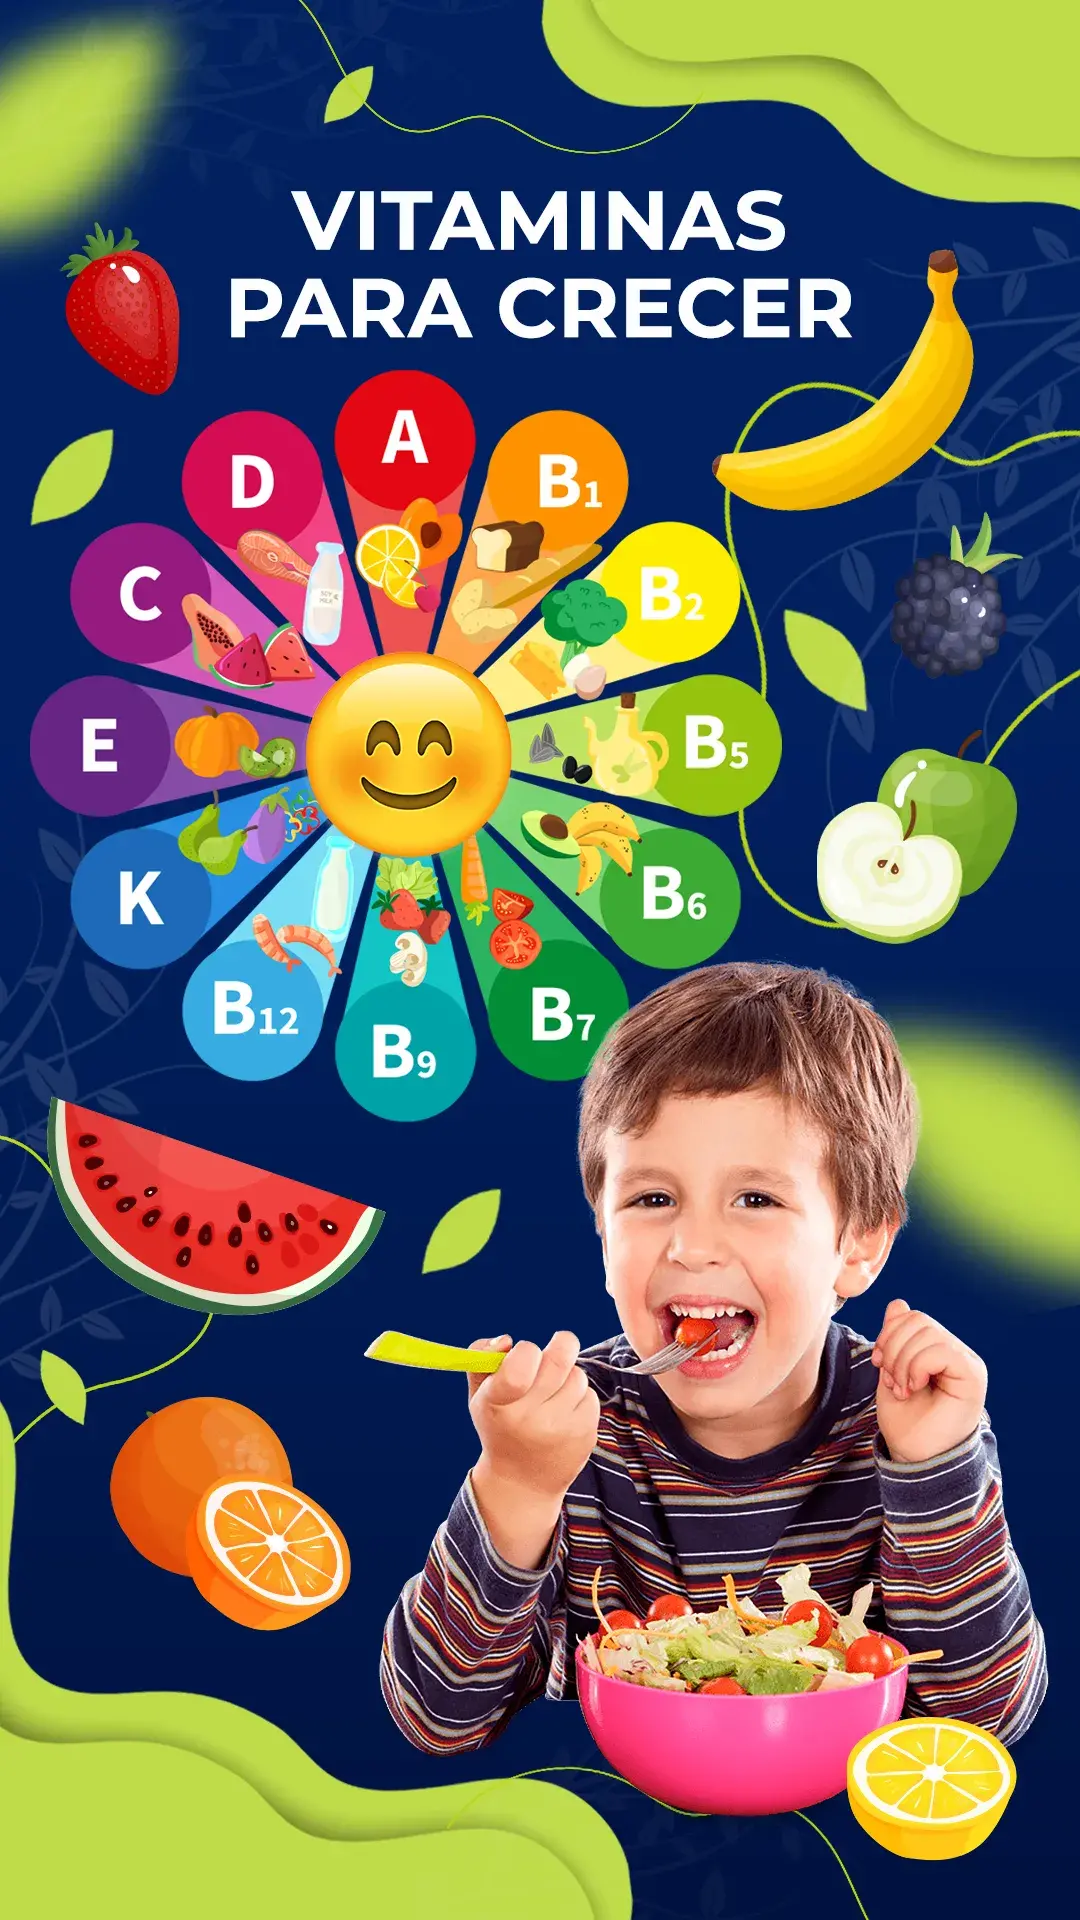 Qué vitaminas necesitan los niños para su crecimiento?